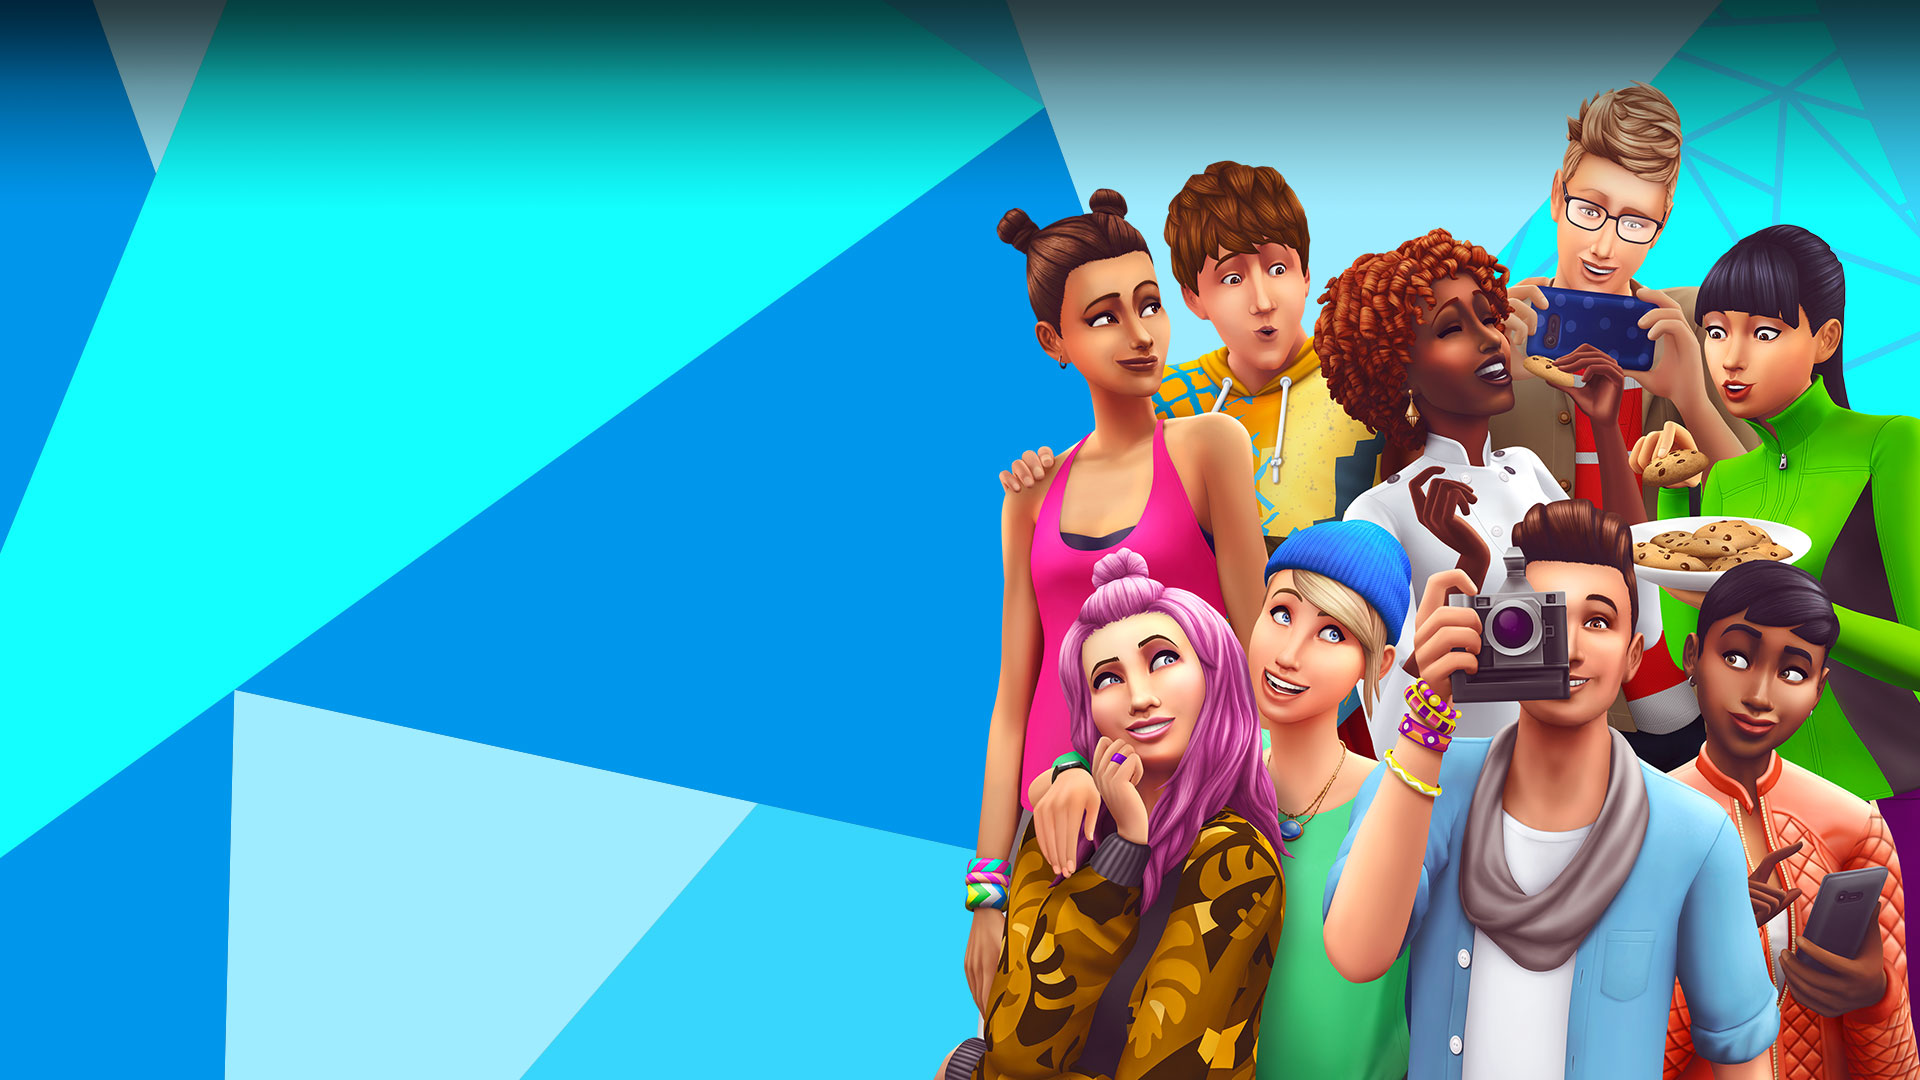 Οι Sims ποζάρουν, τρώνε παρέα και βγάζουν φωτογραφία μπροστά από ένα τριγωνικό μπλε, γαλάζιο και λευκό μωσαϊκό.